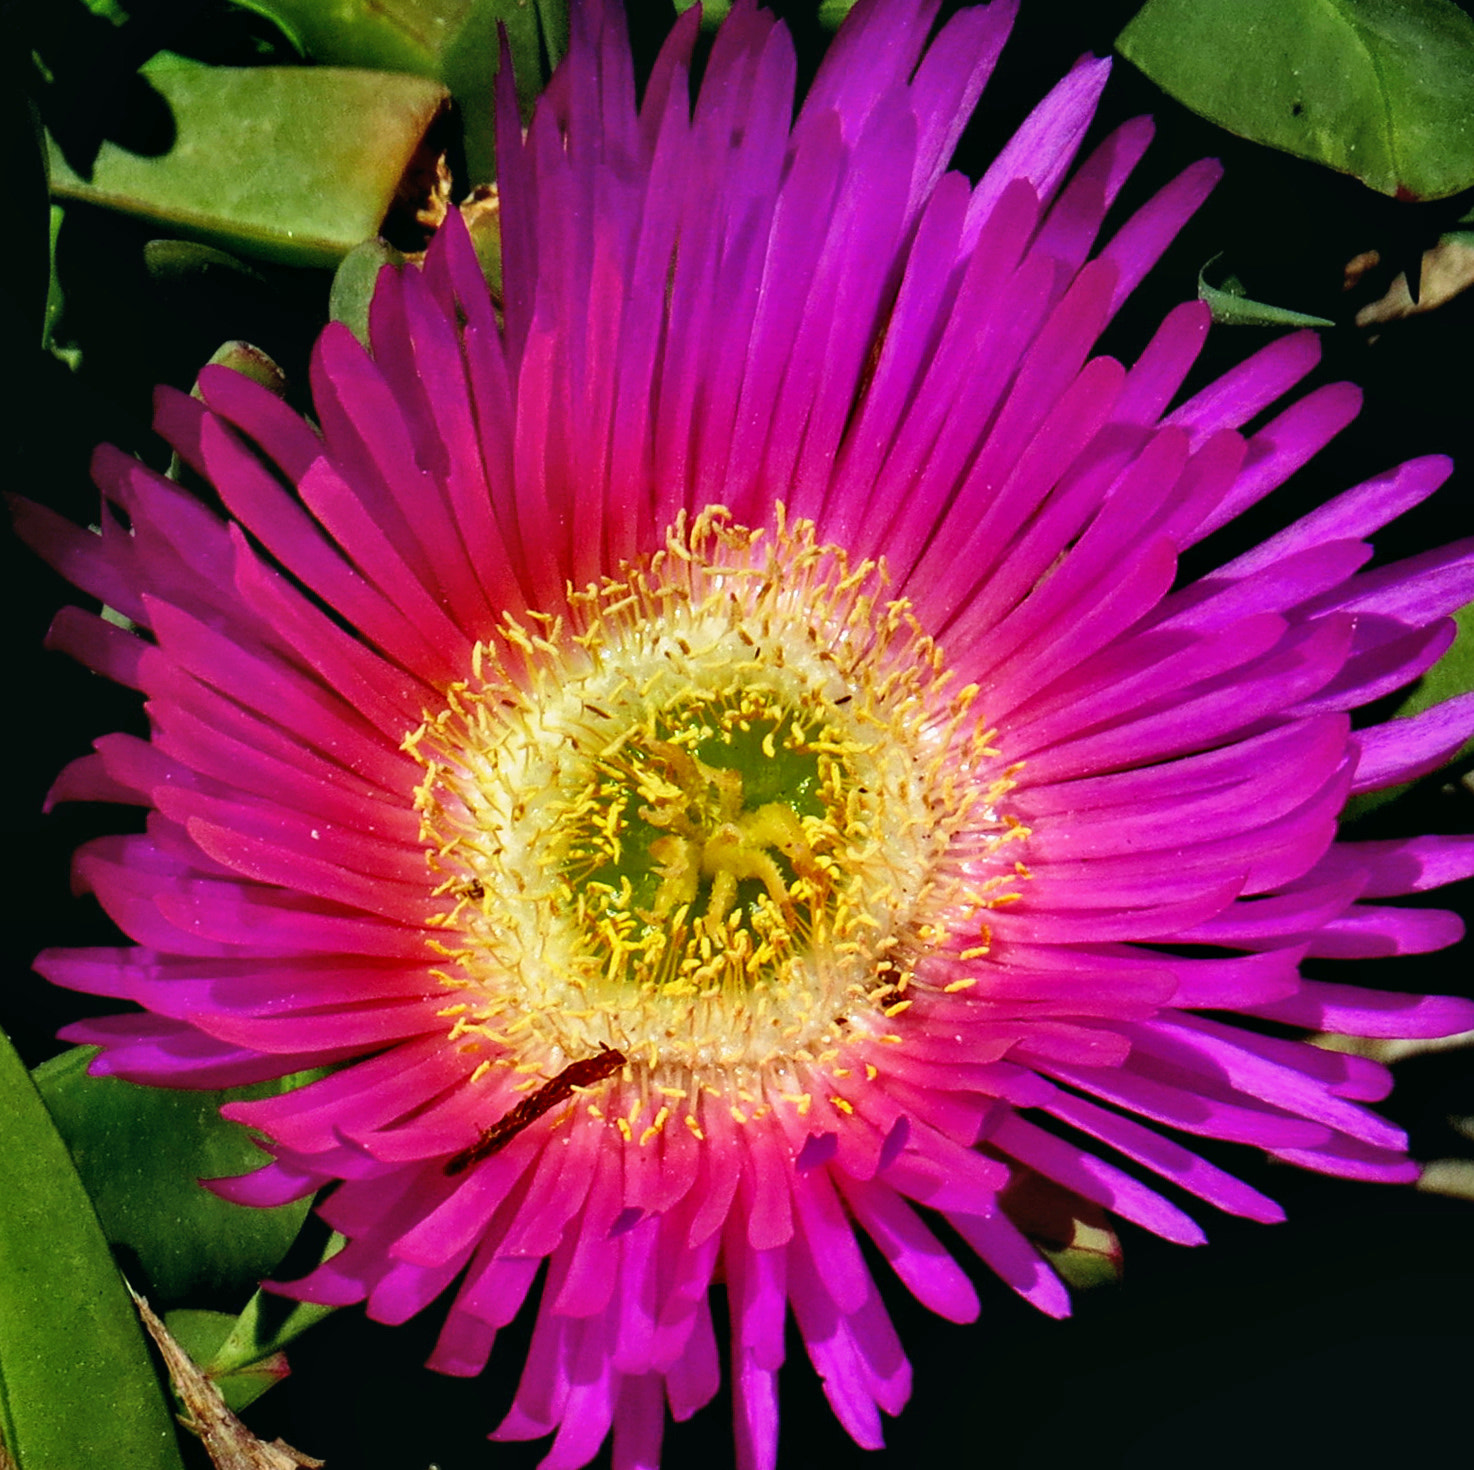 Canon PowerShot SX50 HS + 4.3 - 215.0 mm sample photo. A purple dandelion flower photography